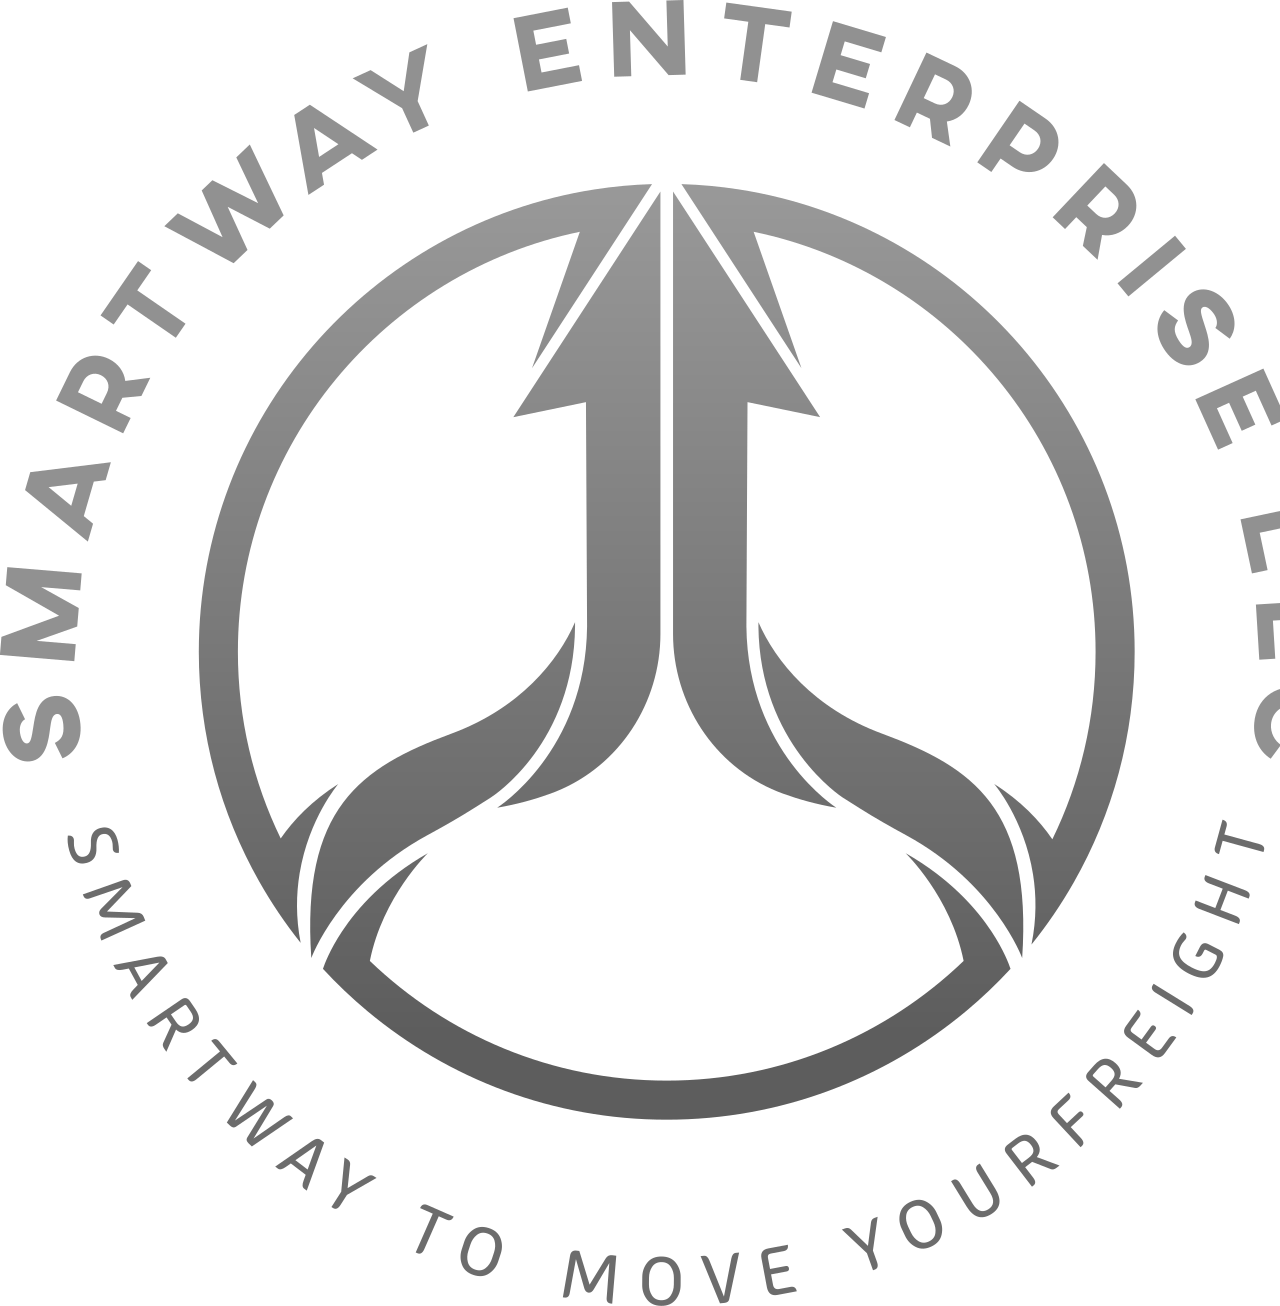 SmartWay Enterprise LLC's web page